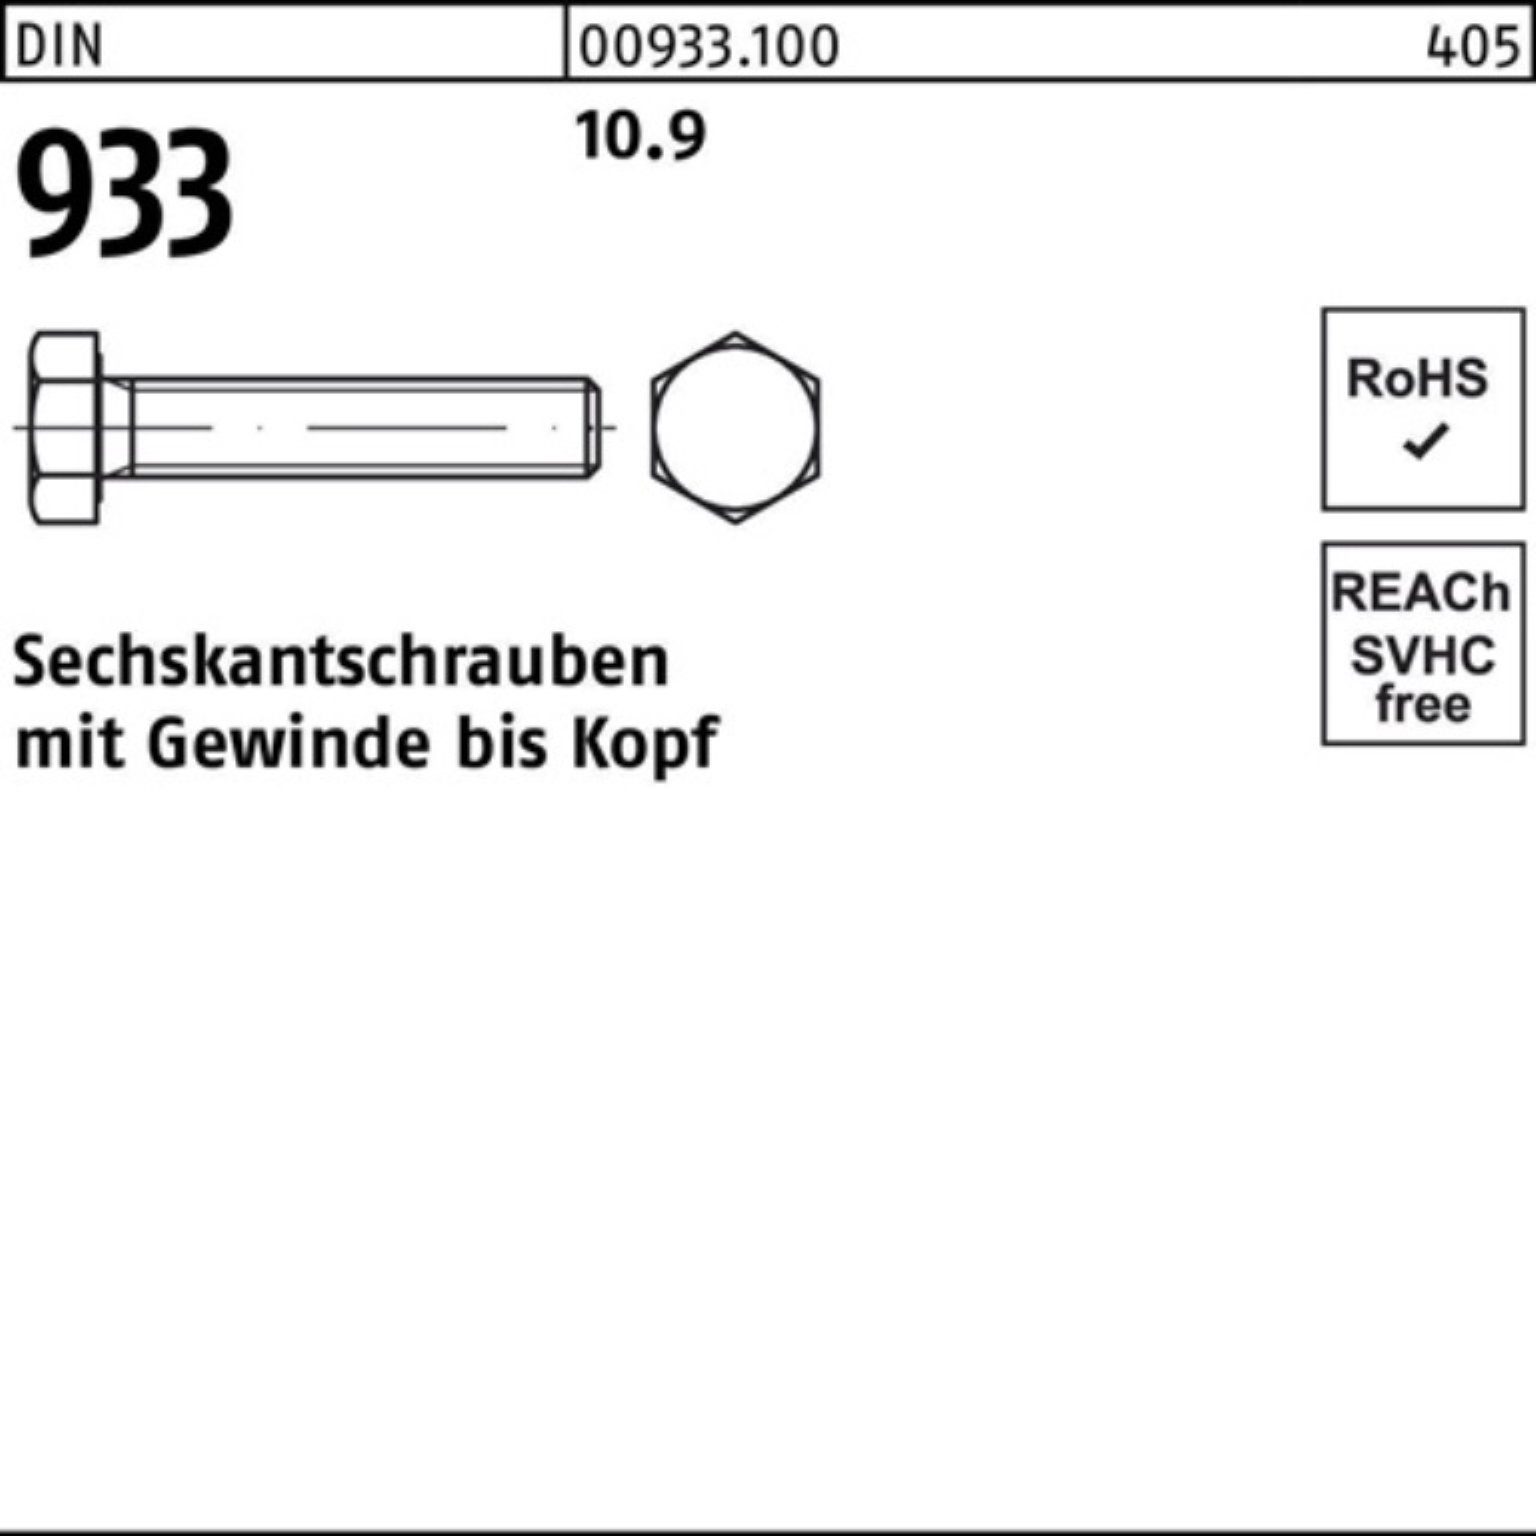 Reyher Sechskantschraube 100er Sechskantschraube DIN DIN 933 Stück 933 Pack M6x 20 VG 100 10.9